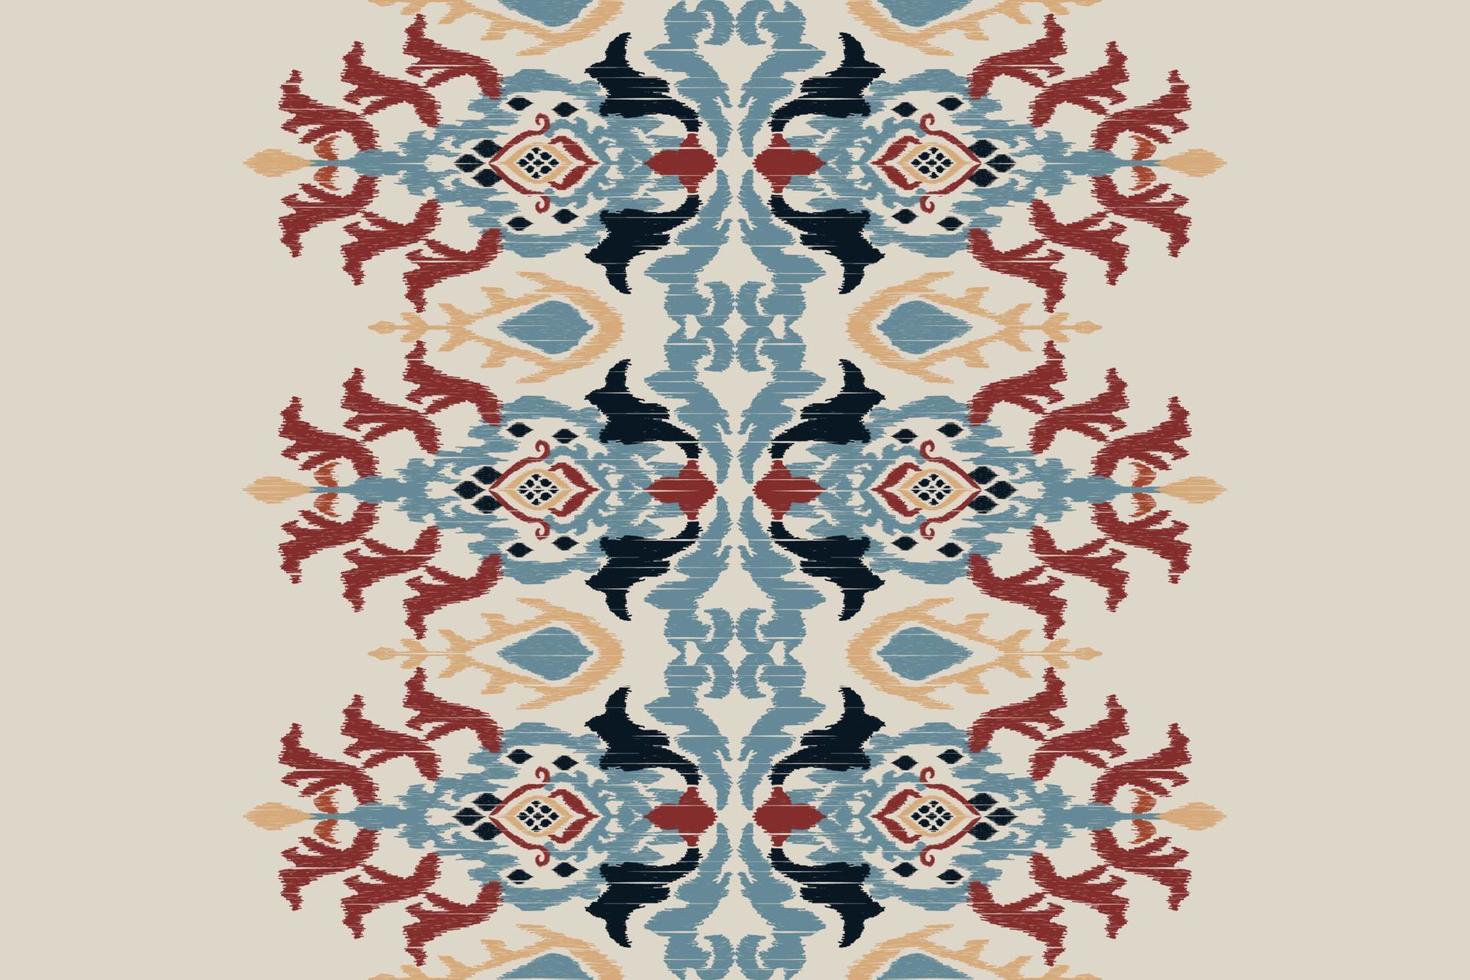 bordado ikat paisley sobre fondo gris.patrón geométrico étnico oriental sin fisuras tradicional.ilustración vectorial abstracta de estilo azteca.diseño para textura,tela,ropa,envoltura,alfombra,impresión. vector